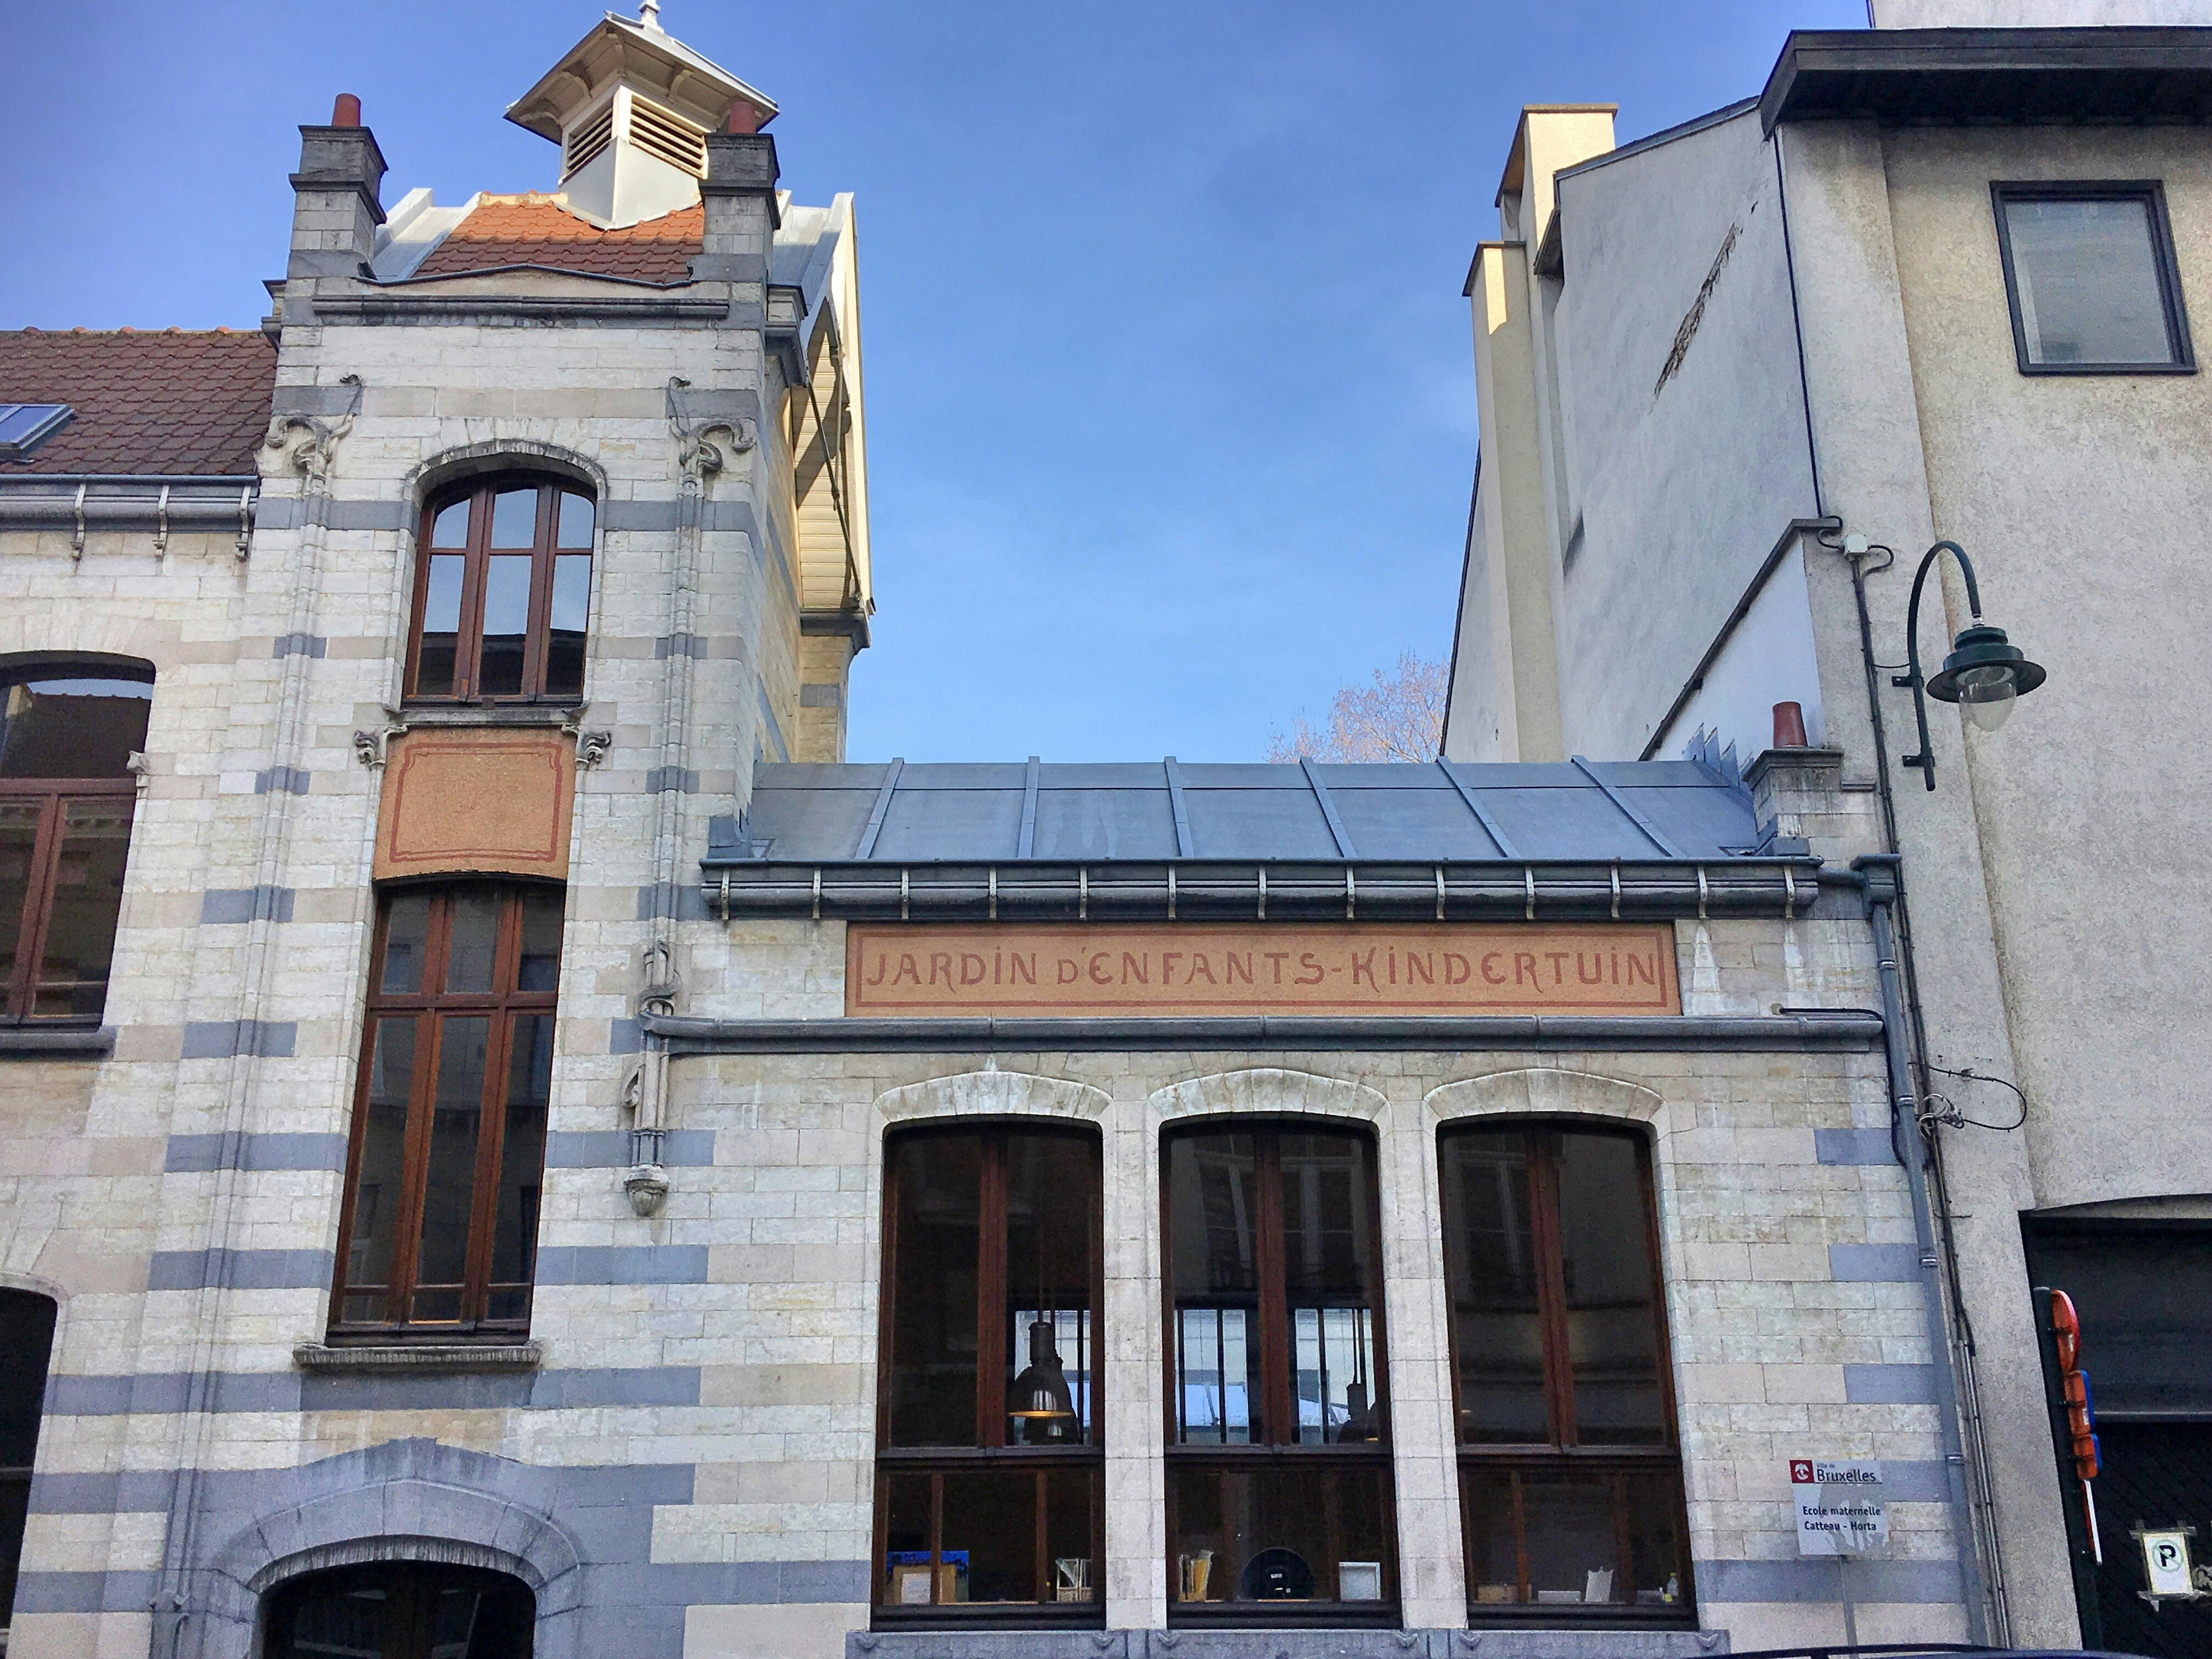 En jugendbyggnad i sten, med tegelstenar i olika nyanser av grått och en orange skylt som säger Jardin d'Enfants-Kindertuin;  det finns grått tak, blyinfattade fönster och skorstenar, och det gränsar till liknande byggnader.